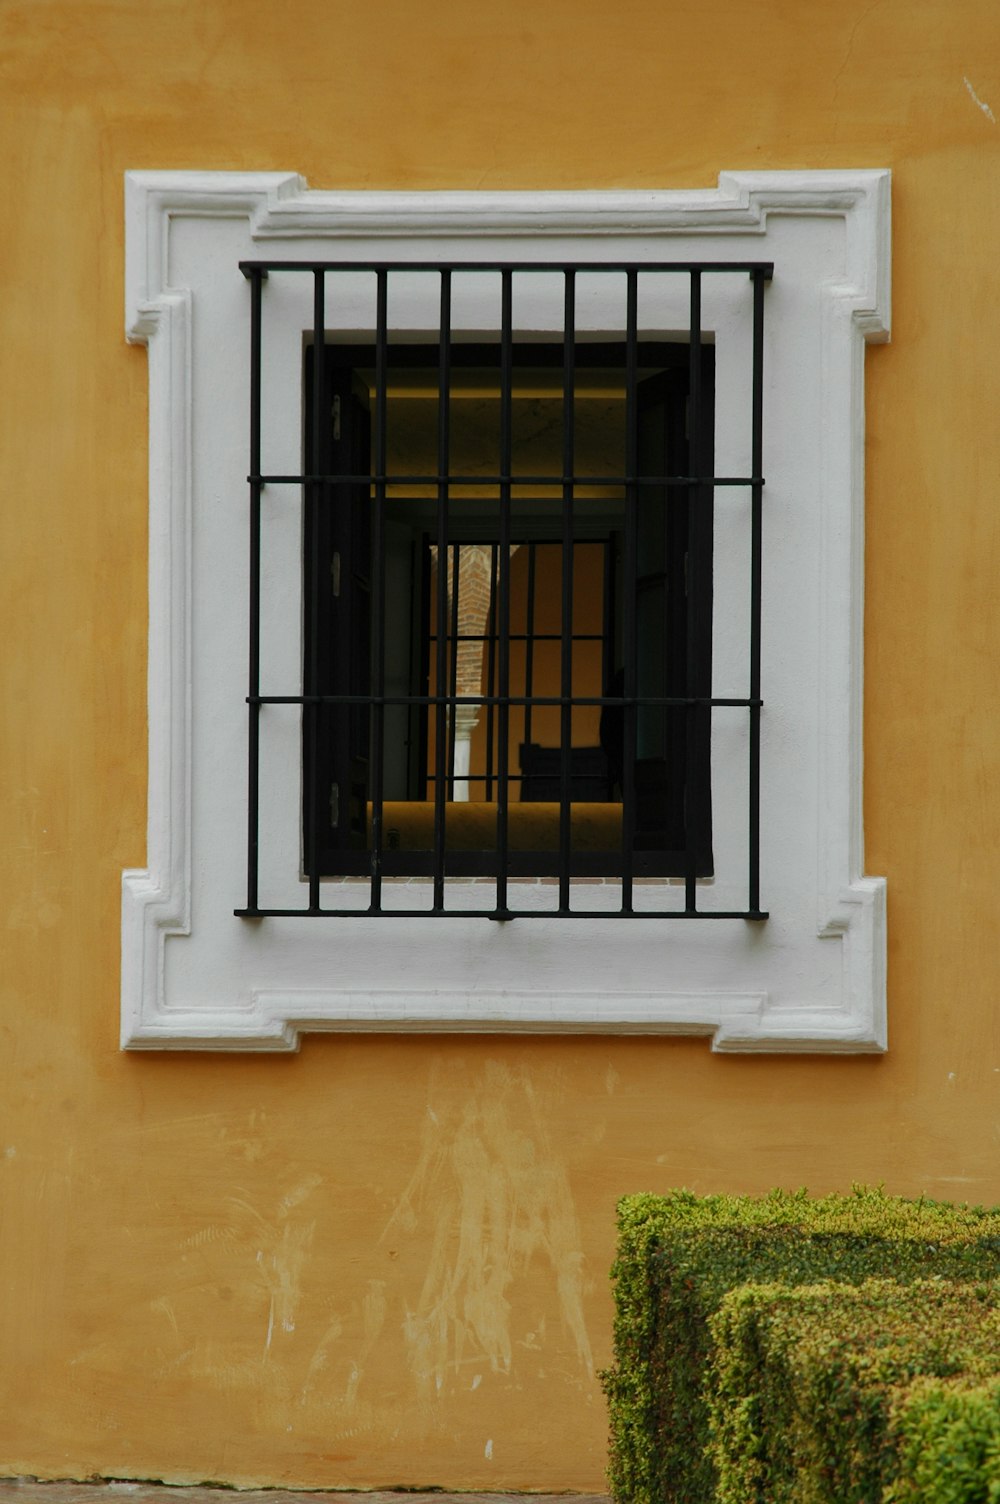 Grille de fenêtre en métal noir sur mur en béton brun